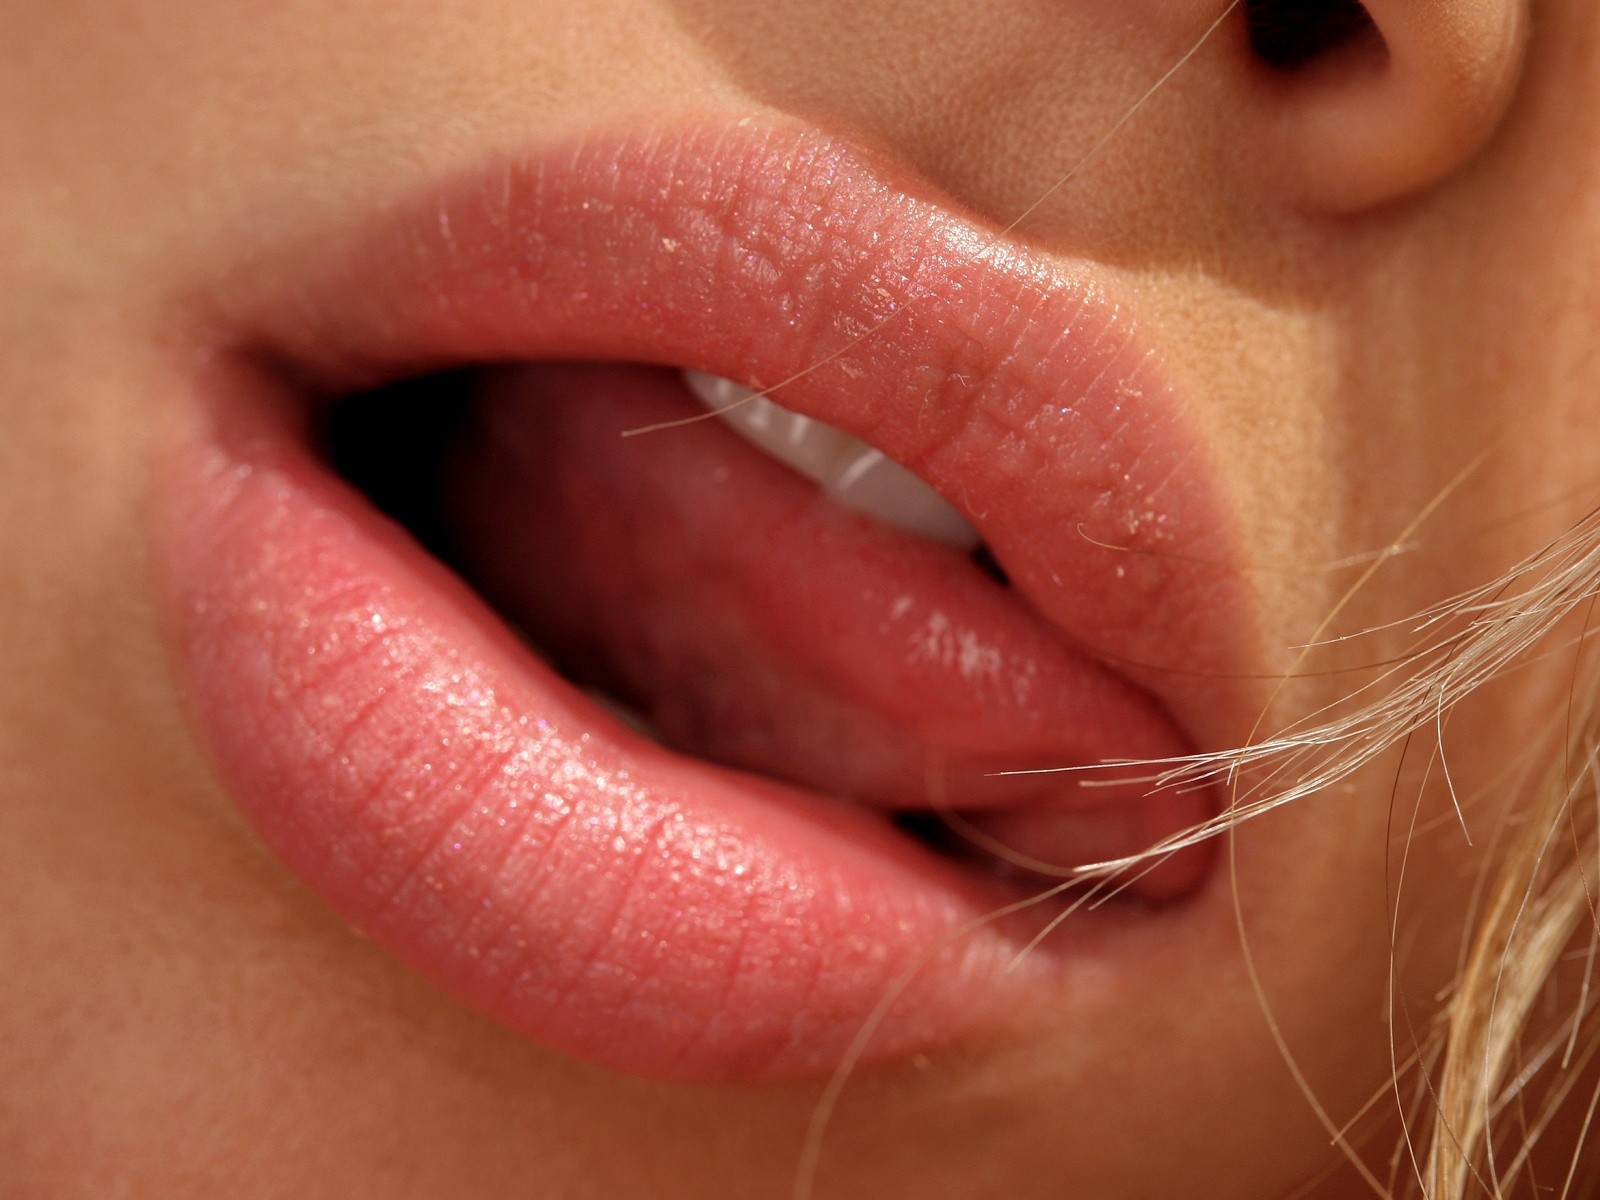  lips hot lips hot lips hot lips hot lips hot lips hot lips hot lips 1600x1200